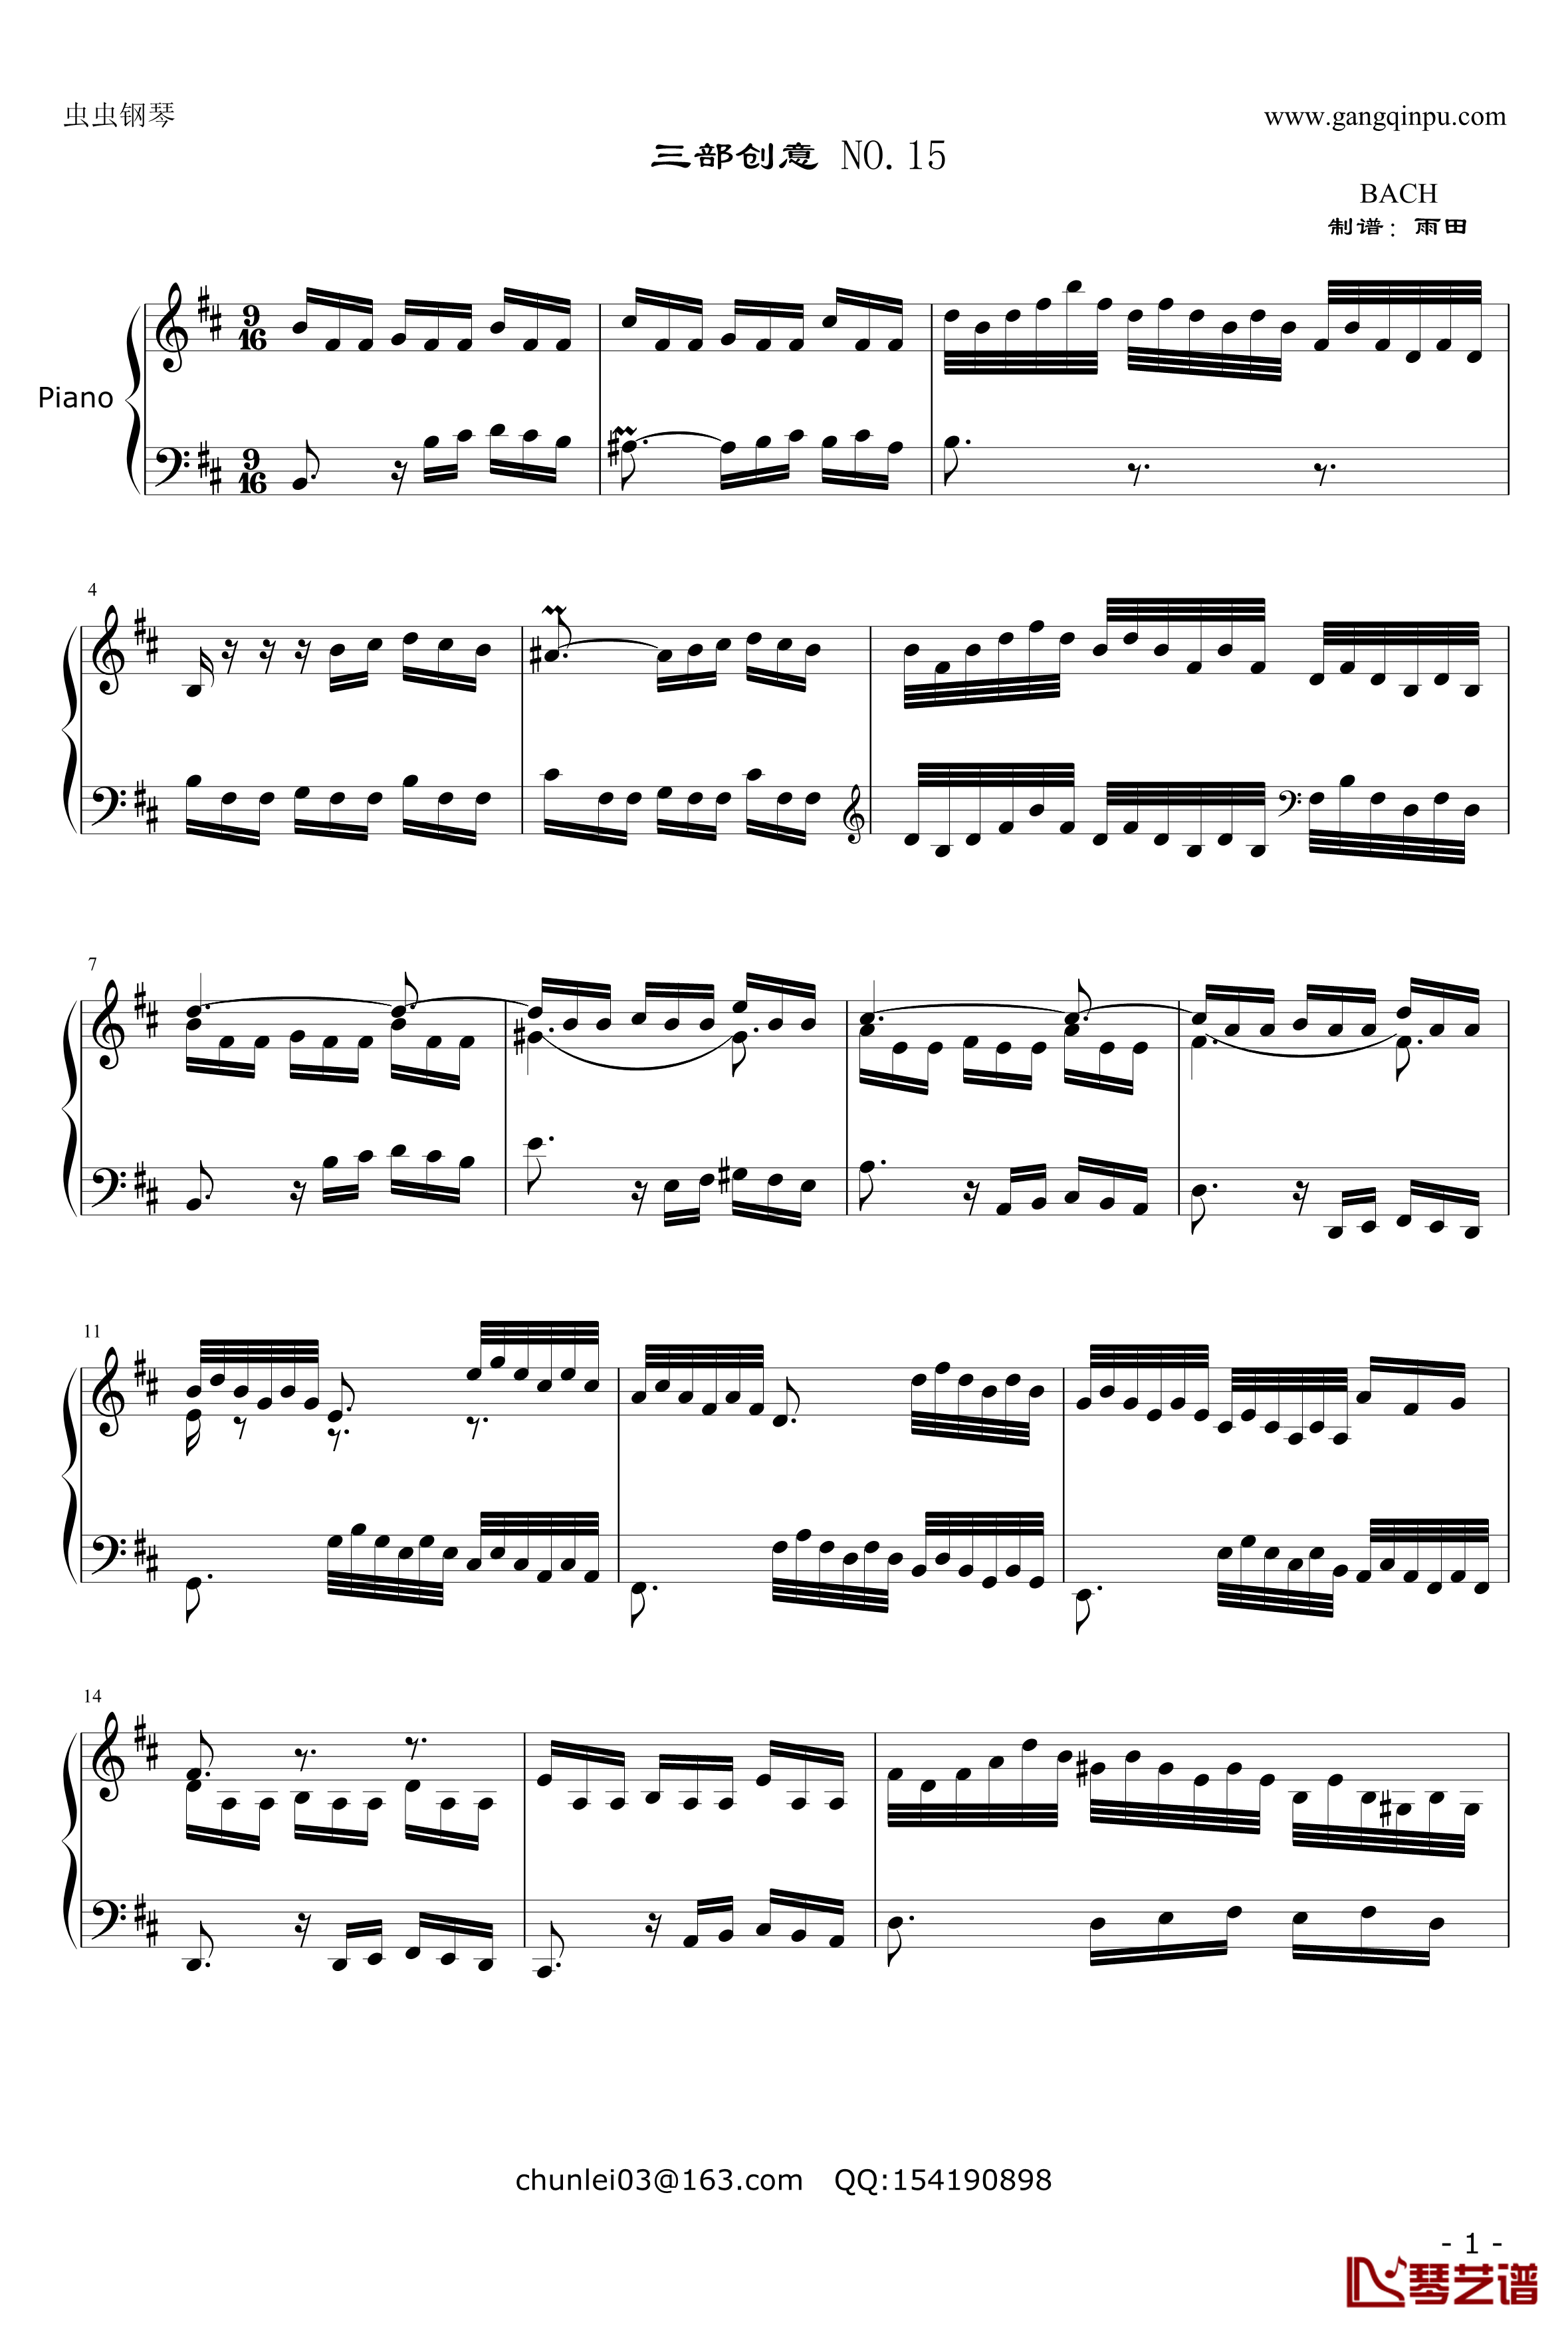 三部创意NO.15钢琴谱-奥芬巴赫-第15首